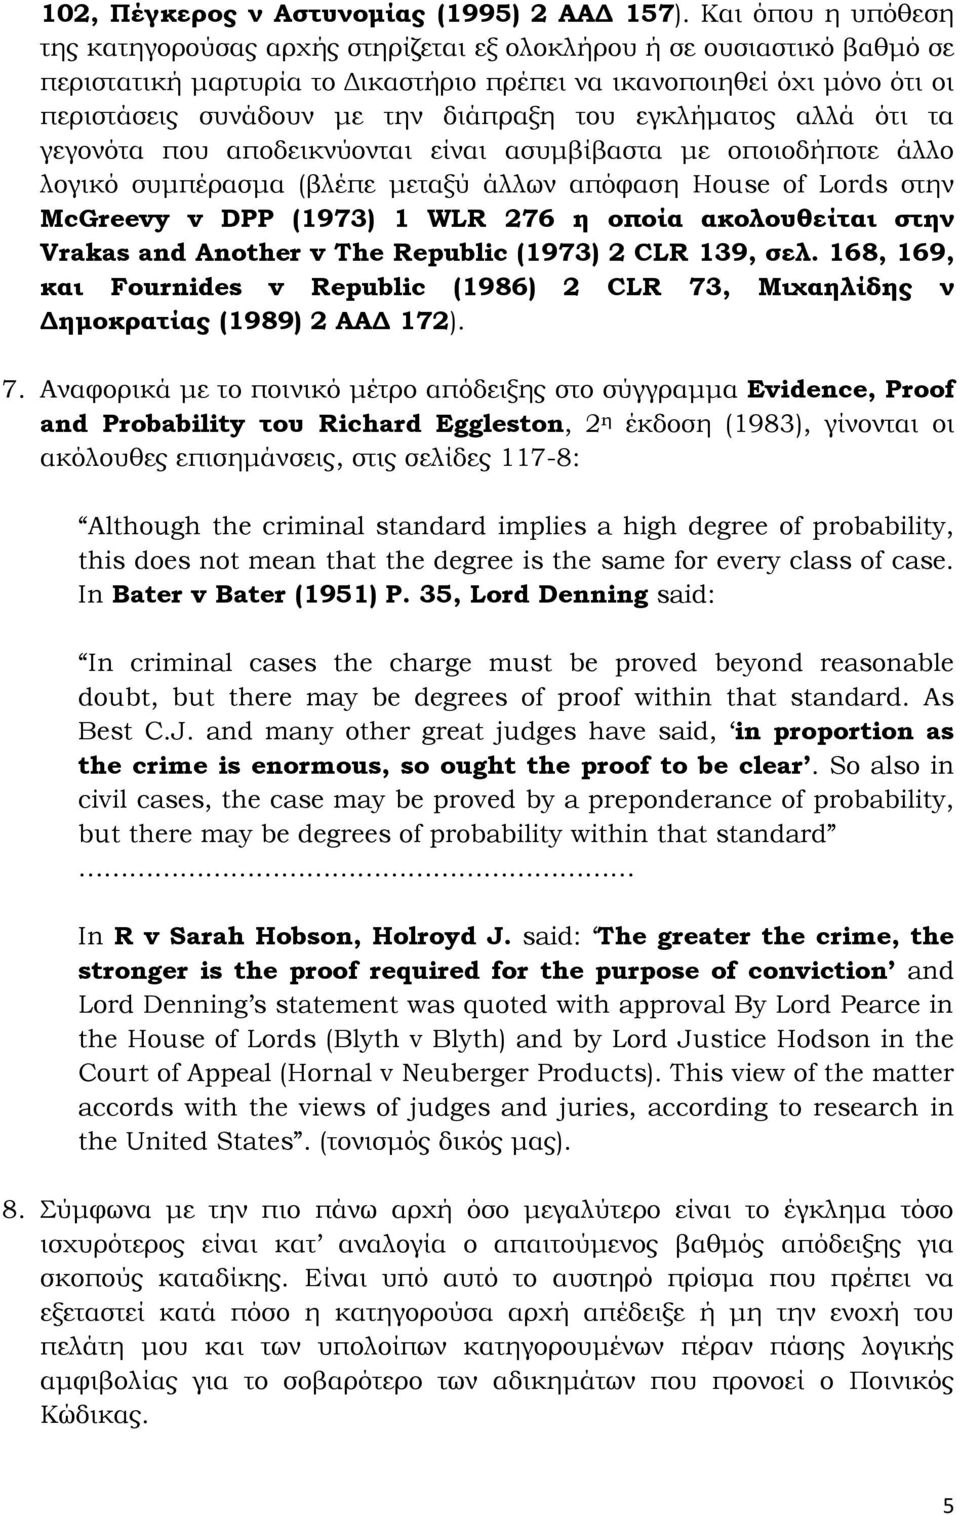 διάπραξη του εγκλήματος αλλά ότι τα γεγονότα που αποδεικνύονται είναι ασυμβίβαστα με οποιοδήποτε άλλο λογικό συμπέρασμα (βλέπε μεταξύ άλλων απόφαση House of Lords στην McGreevy v DPP (1973) 1 WLR 276